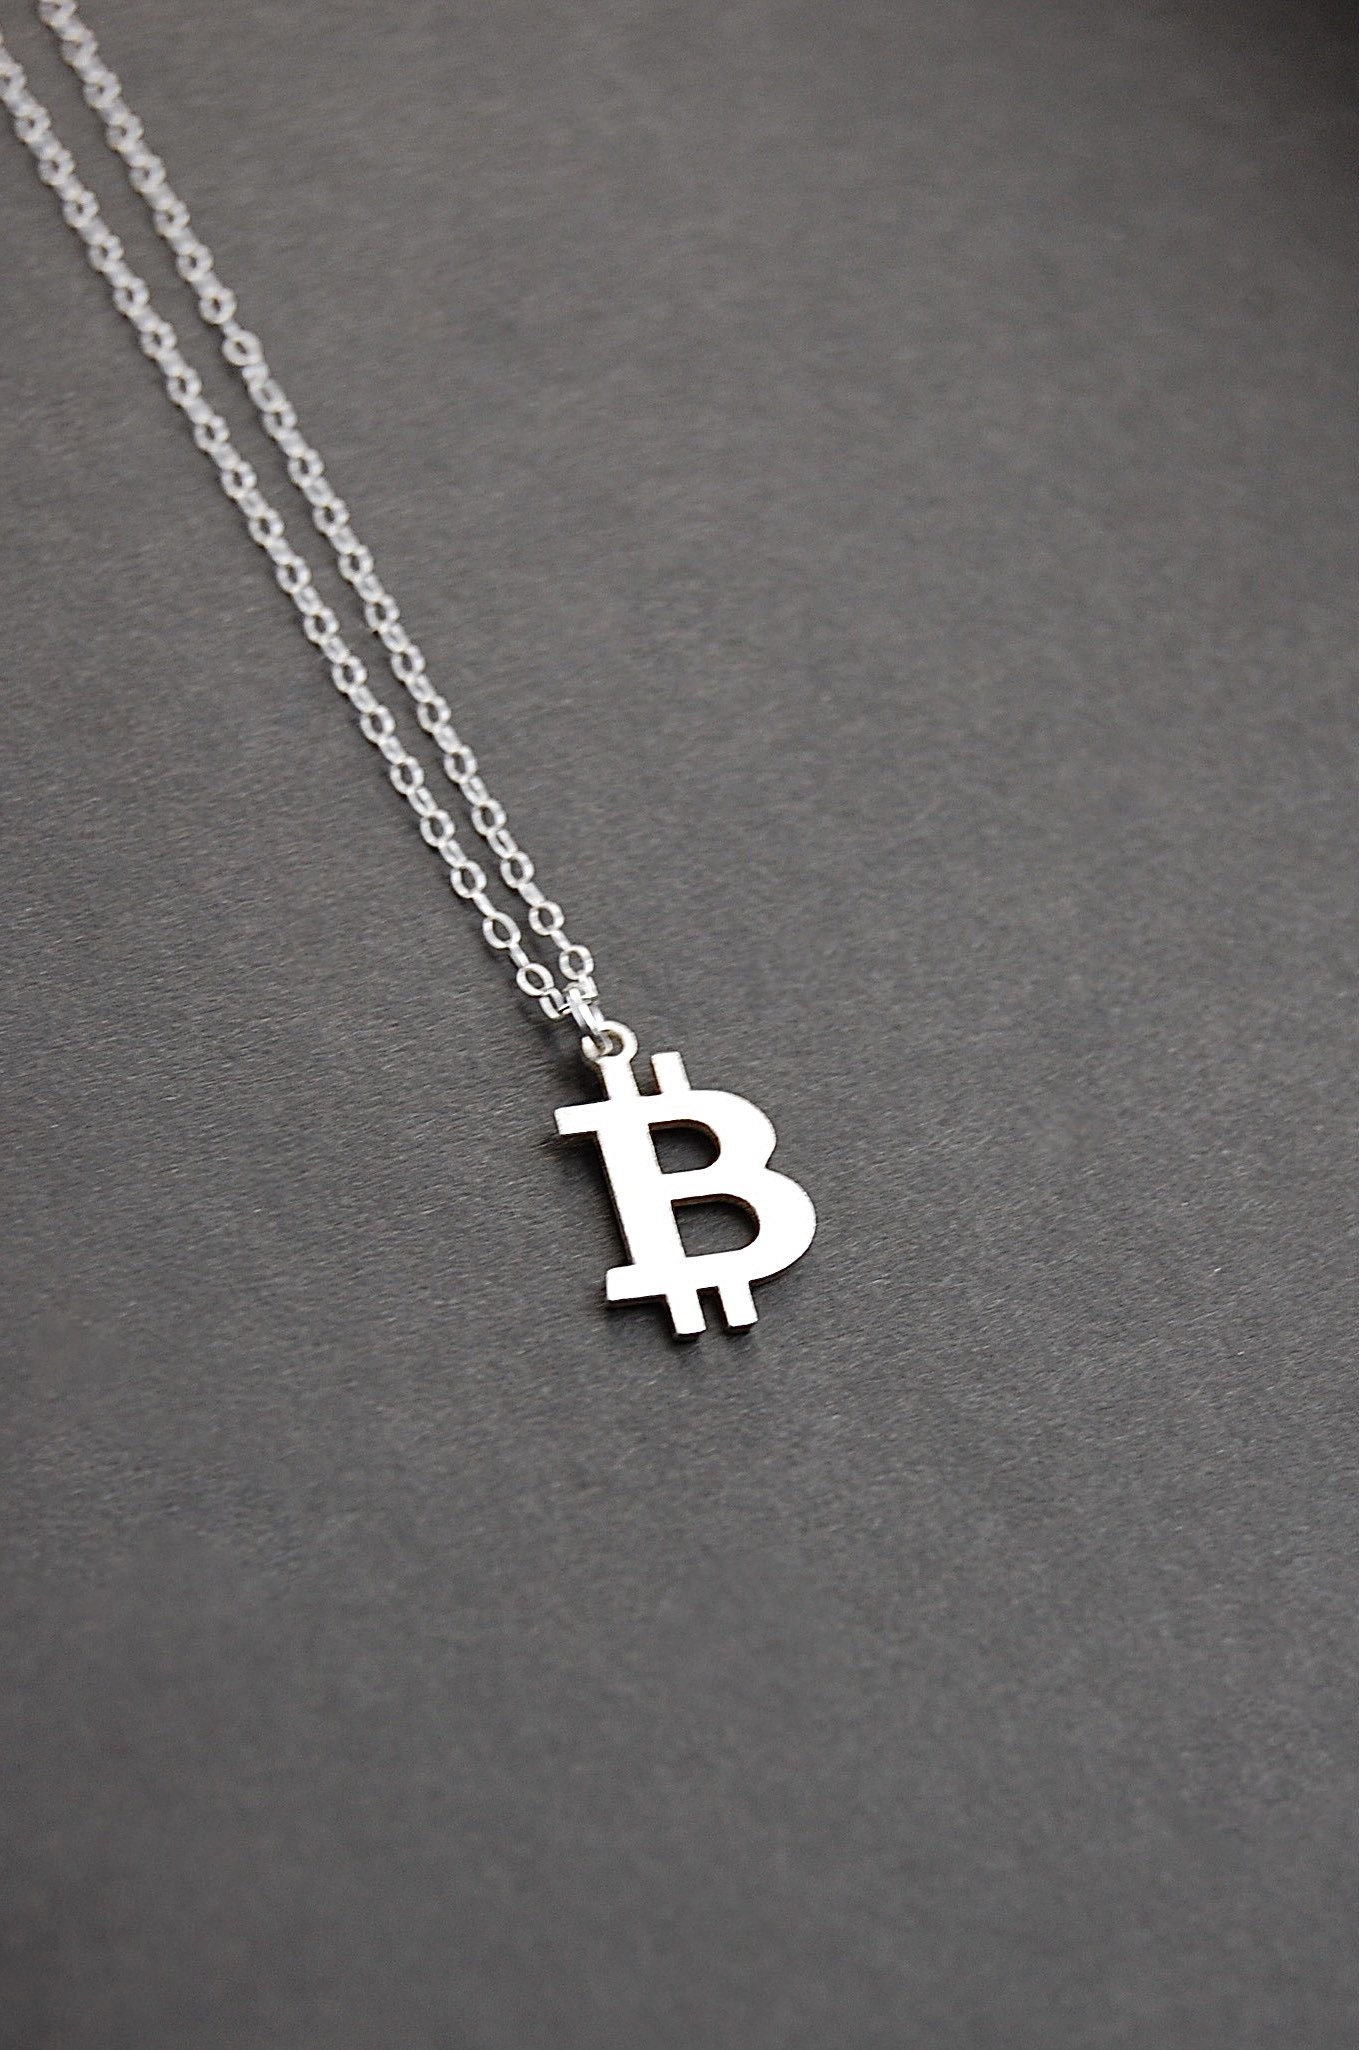 Bitcoin Necklace 18